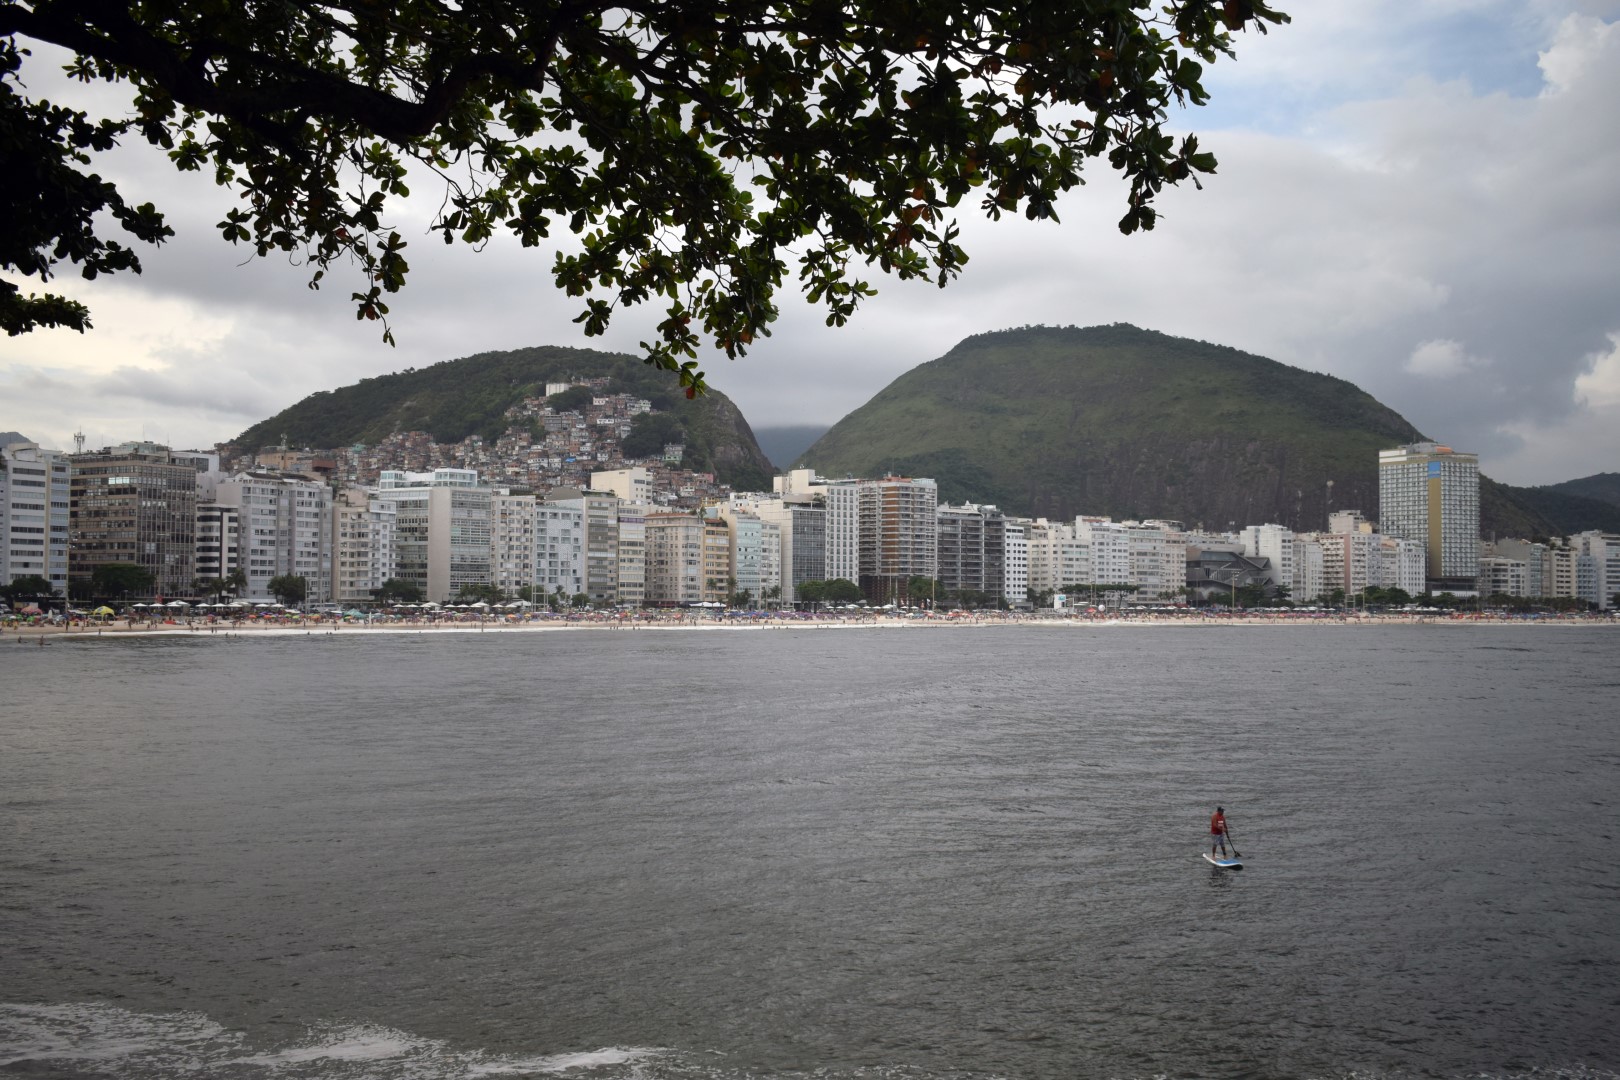 Forte de Copacabana, Praça Coronel Eugênio Franco, 1 Posto 6, Copacabana, Rio de Janeiro